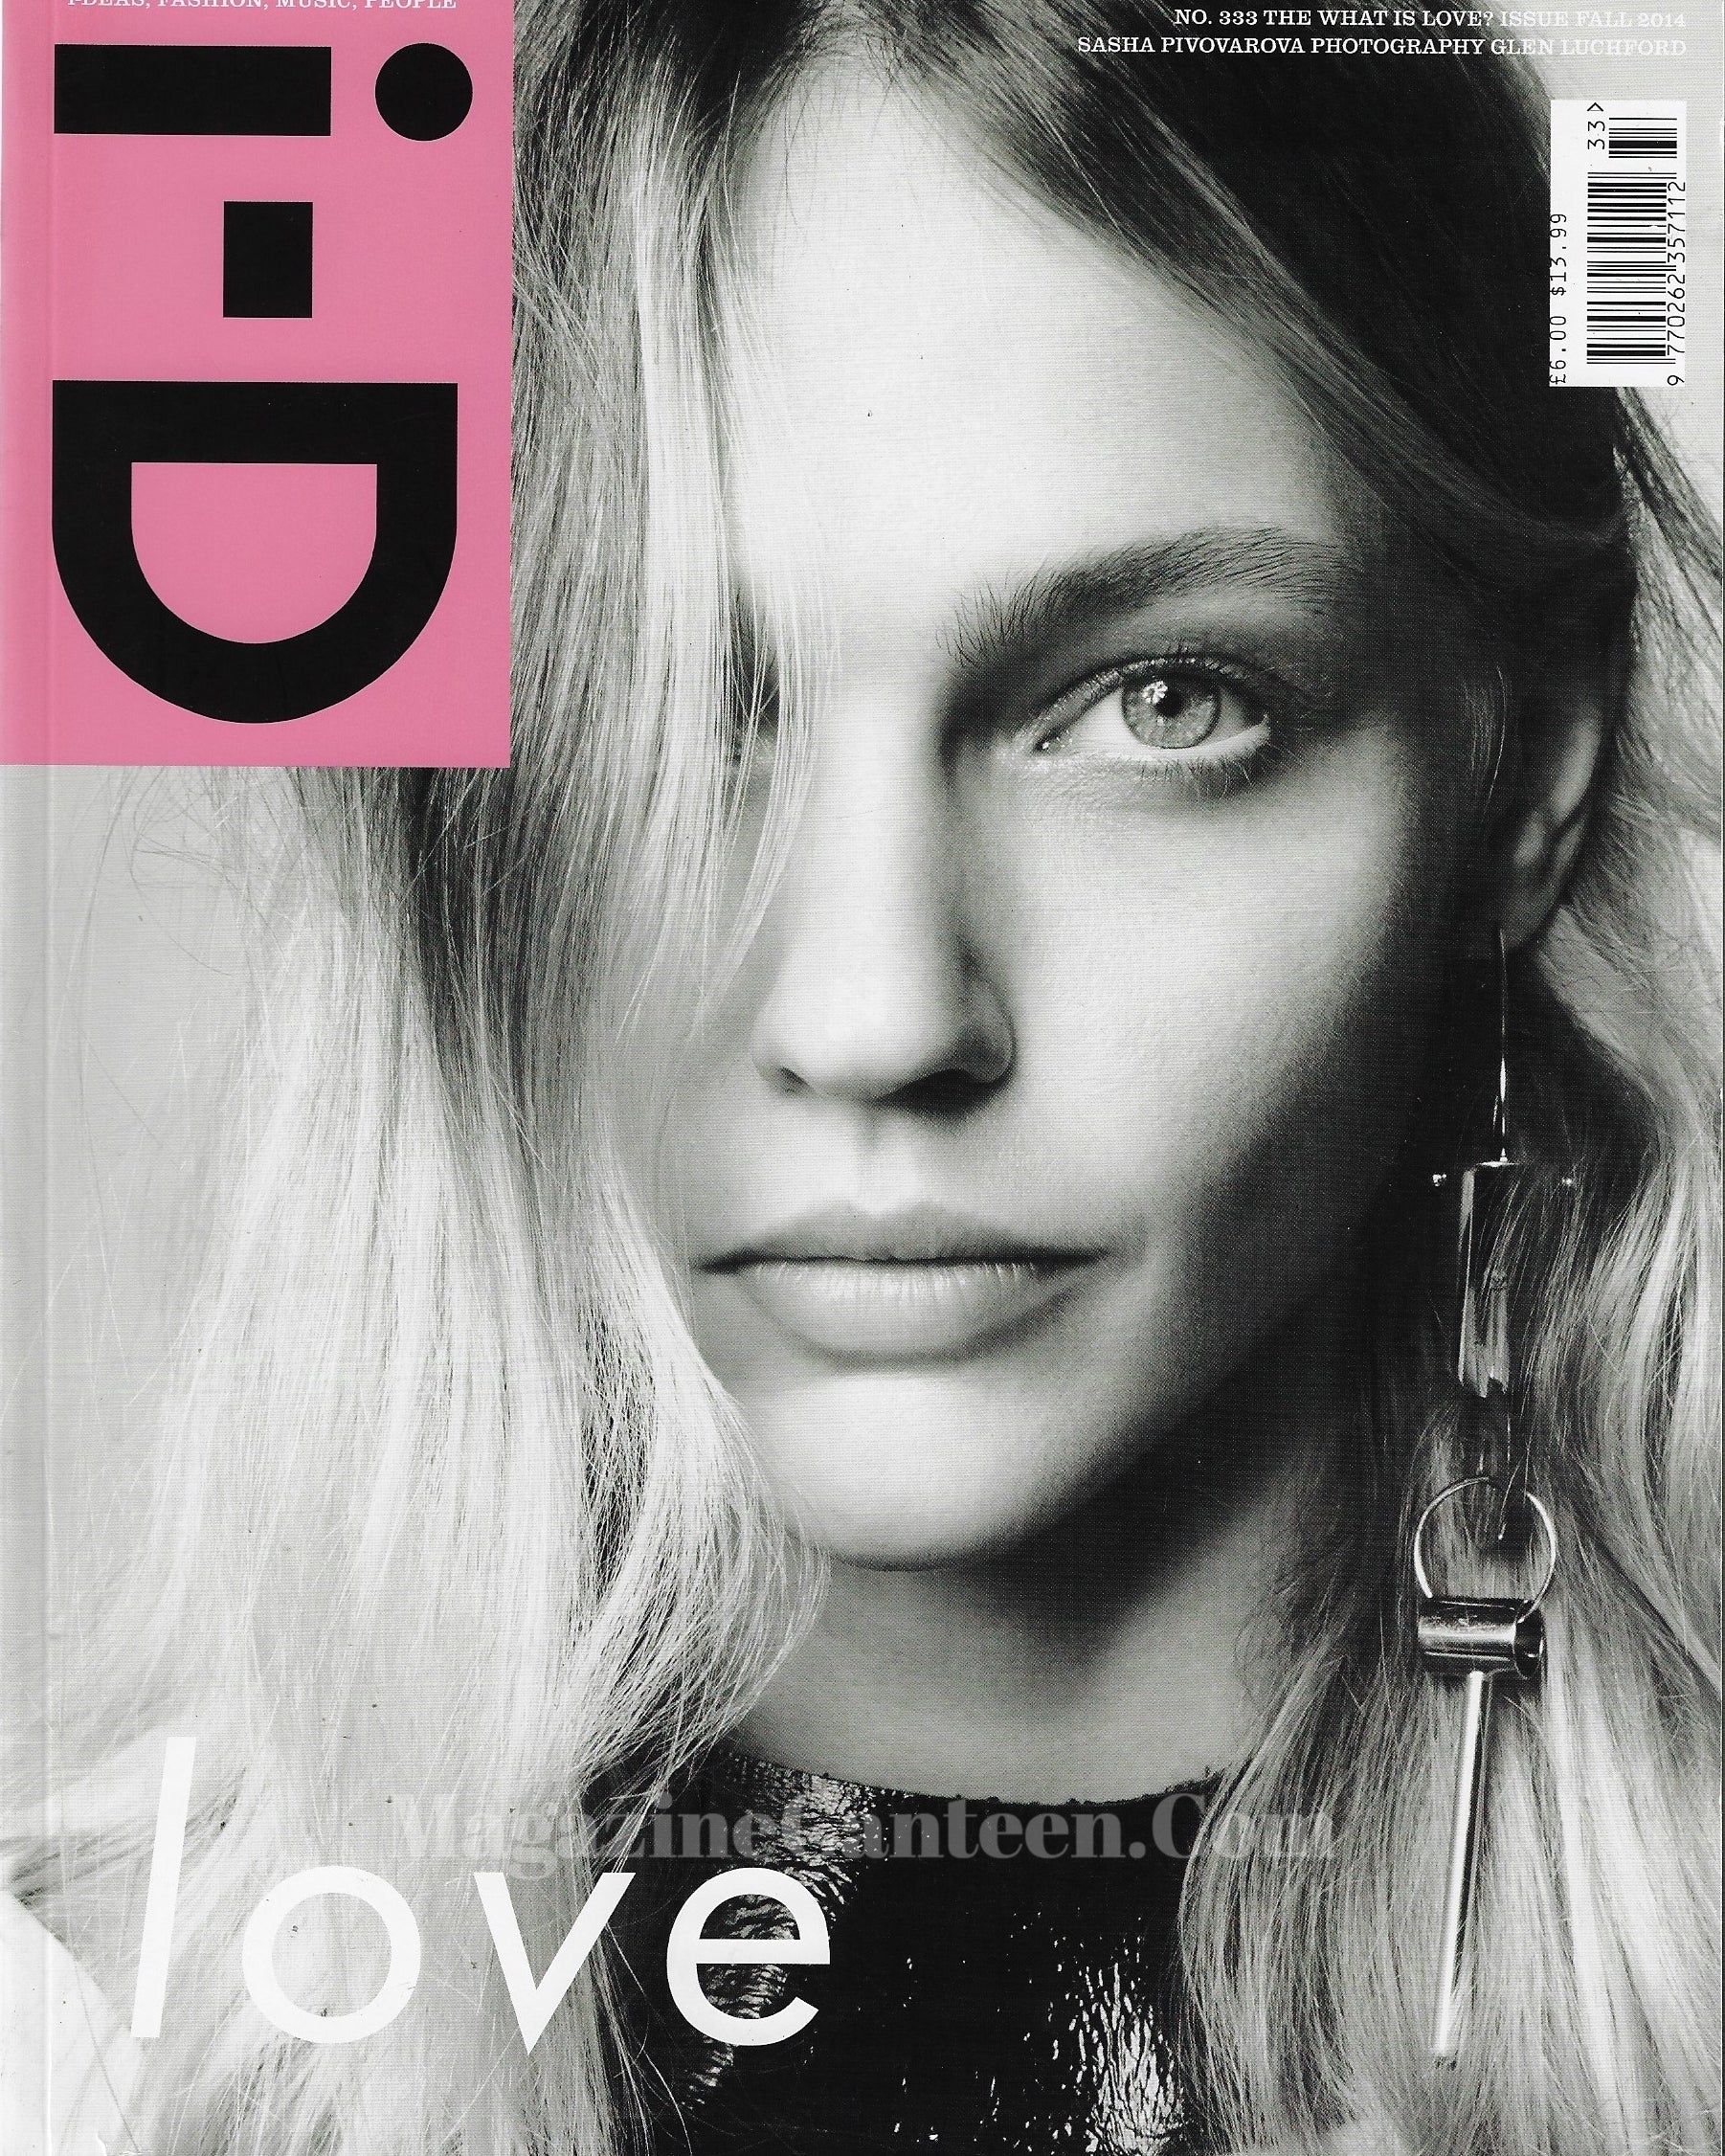 I-D Magazine 333 - Sasha Pivovarova 2014